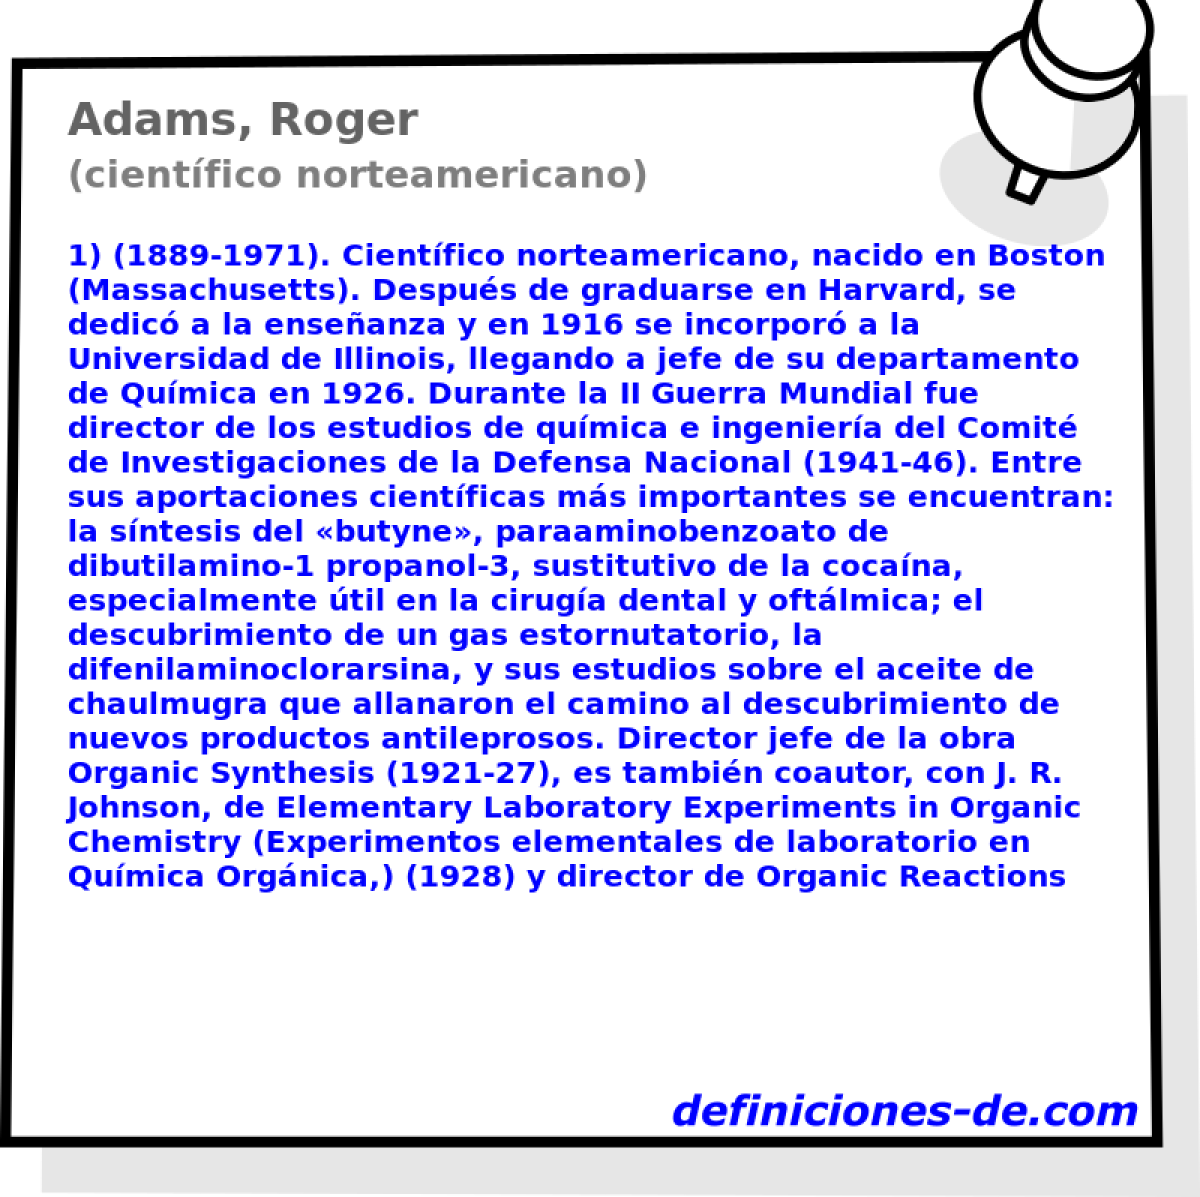 Adams, Roger (cientfico norteamericano)